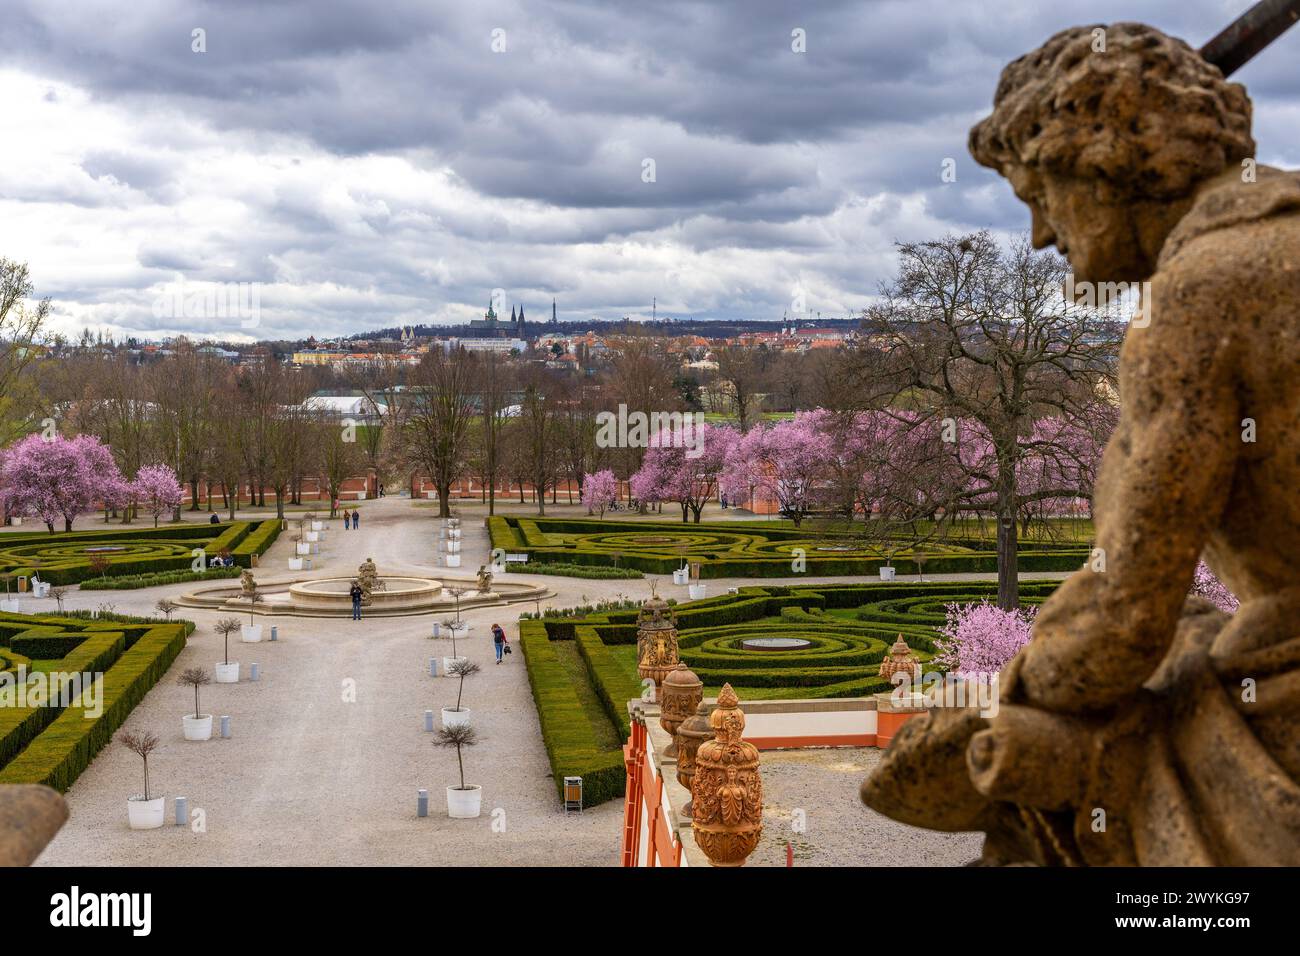 Giardini storici del castello di Troja con il castello di Praga in lontananza Foto Stock